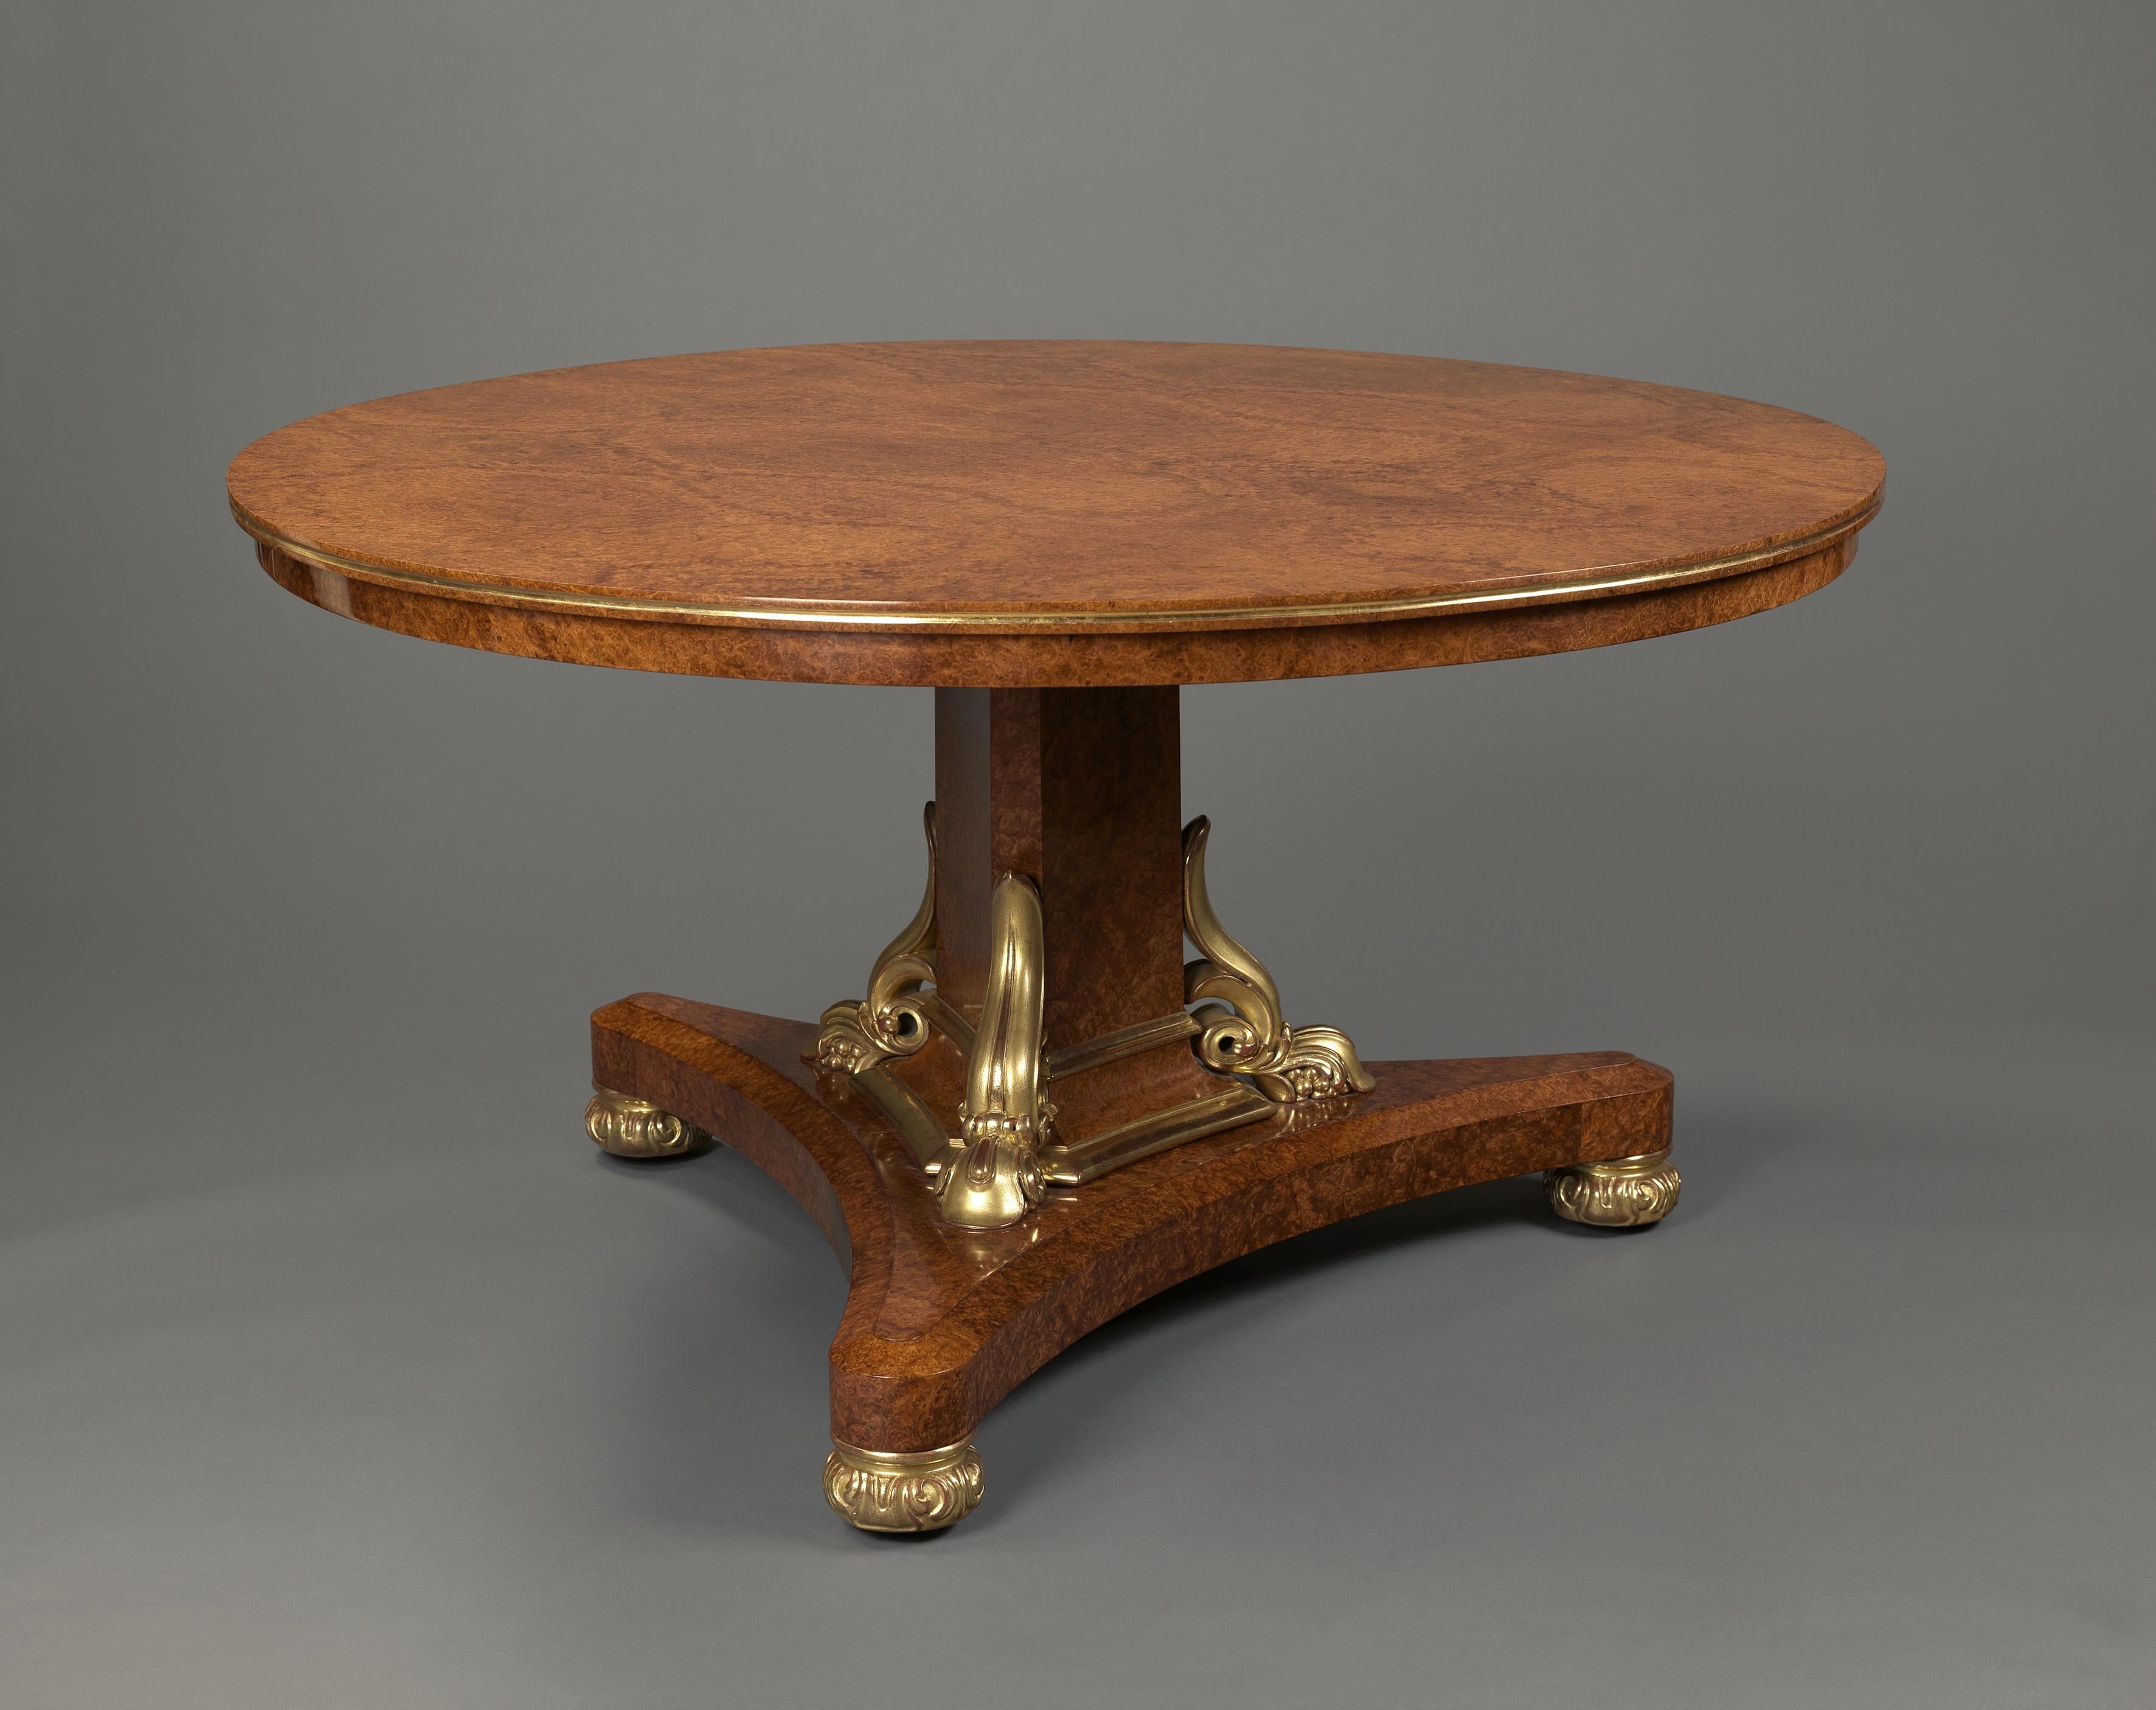 Une très belle table centrale en Amboyna doré parcellaire de George IV attribuée à Thomas et George Seddon. 

Anglais, vers 1830. 

La table est en Amboyna finement figuré avec un plateau circulaire basculant au-dessus d'une colonne triforme avec